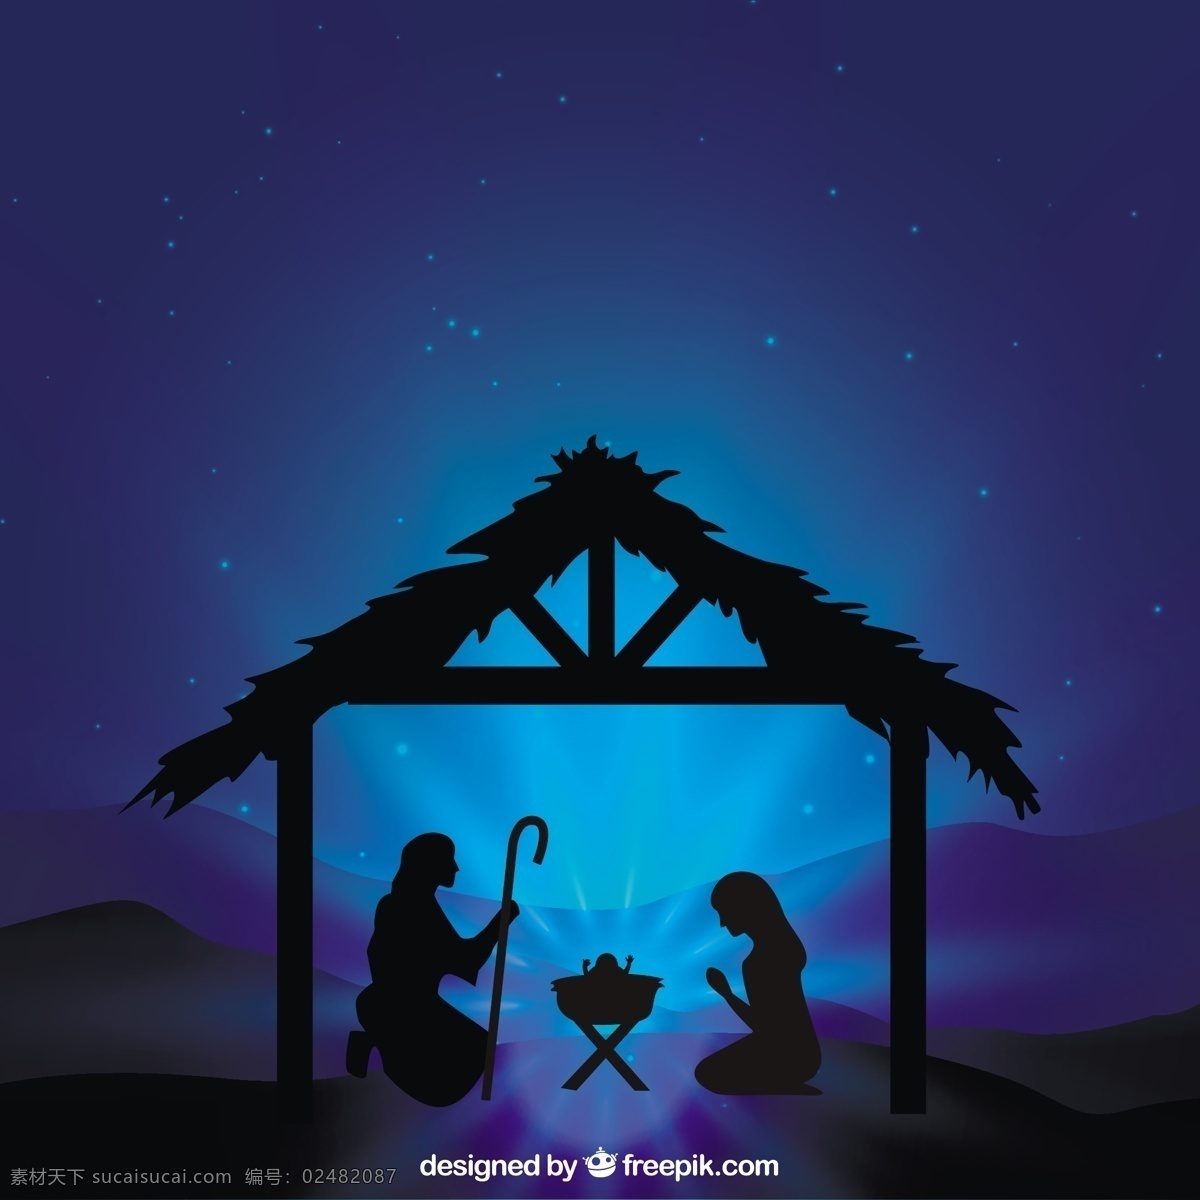 耶稣 诞生 场景 剪影 圣诞节 宝贝 明星 快活 冬季 蓝色 天使 快乐 庆祝 假日 晚上 鸽子 假期 插图 圣诞